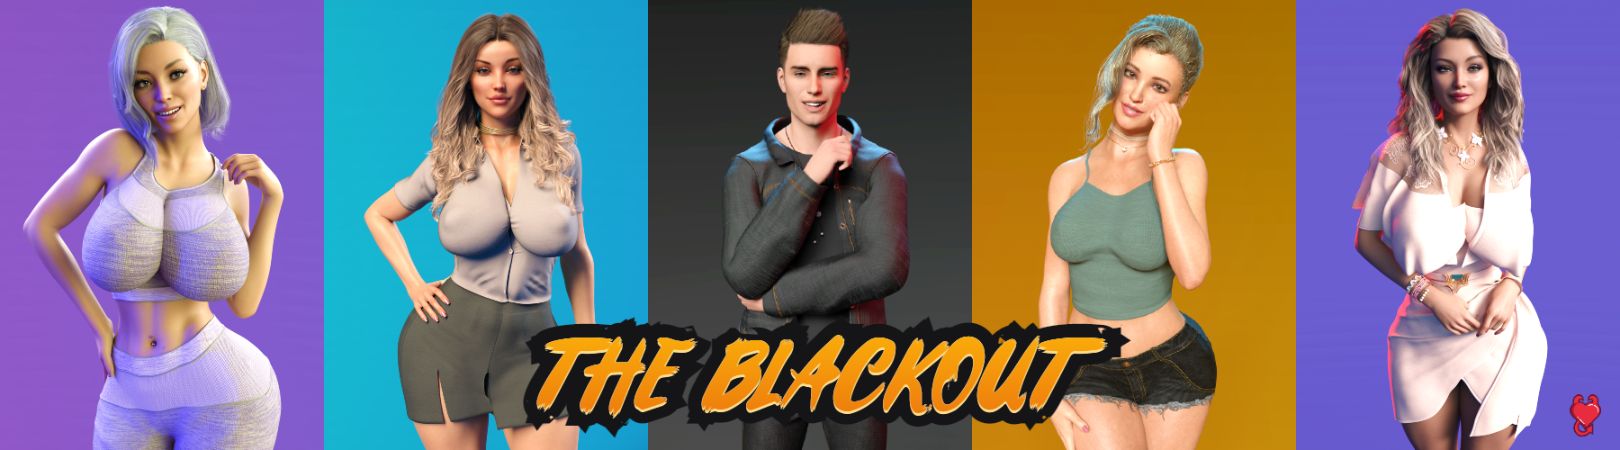 The Blackout Apk